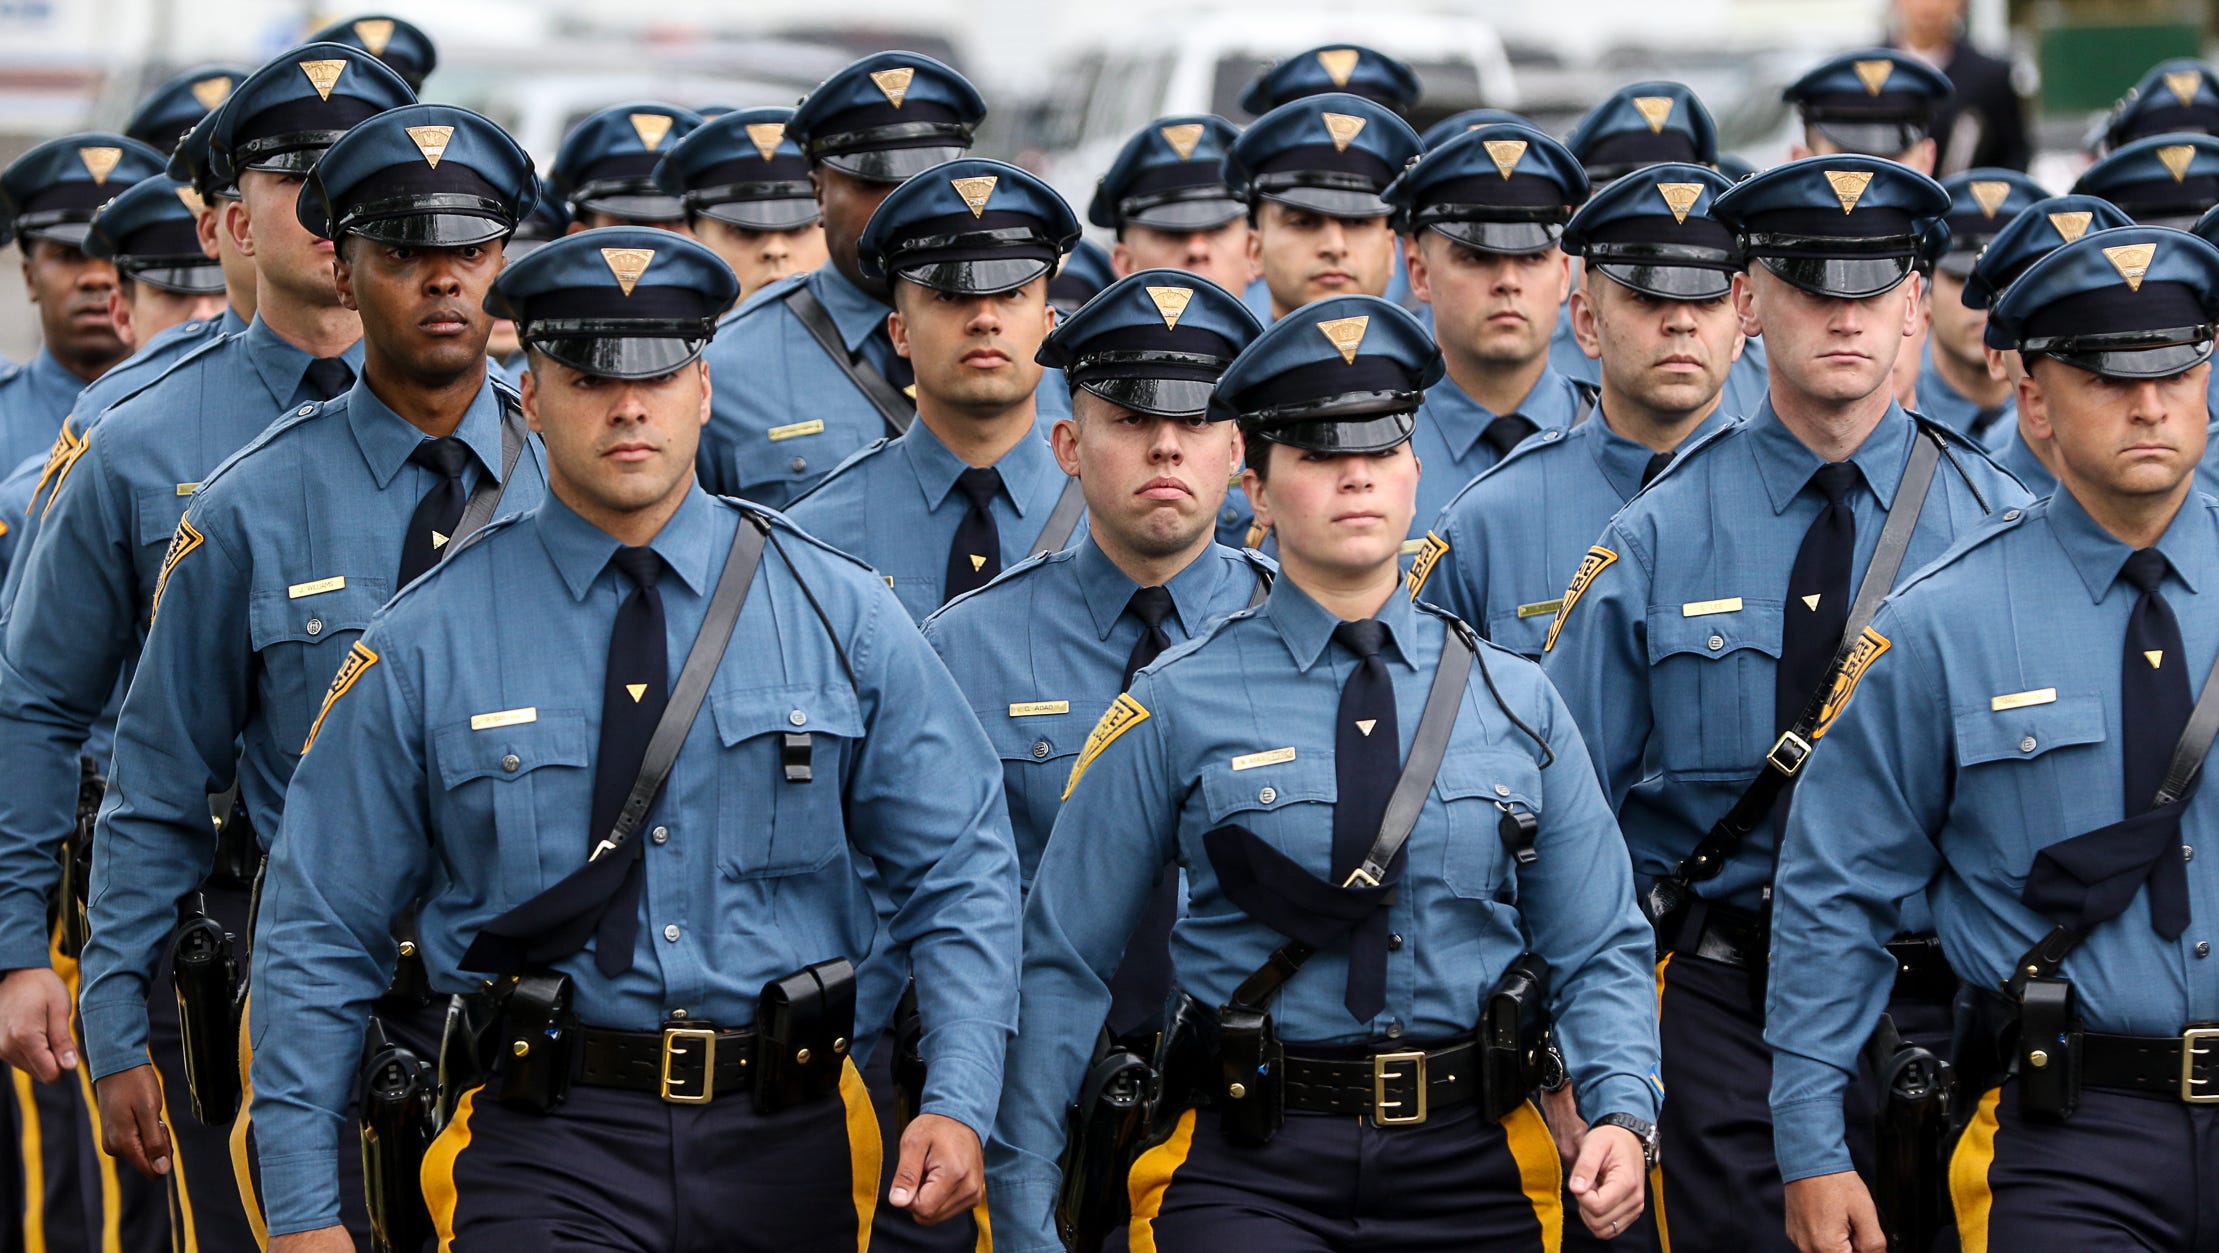 Палицая. Нью-джерси.форма полиции. Полиция штата Нью джерси. New Jersey State Police uniform. Полицейская форма.